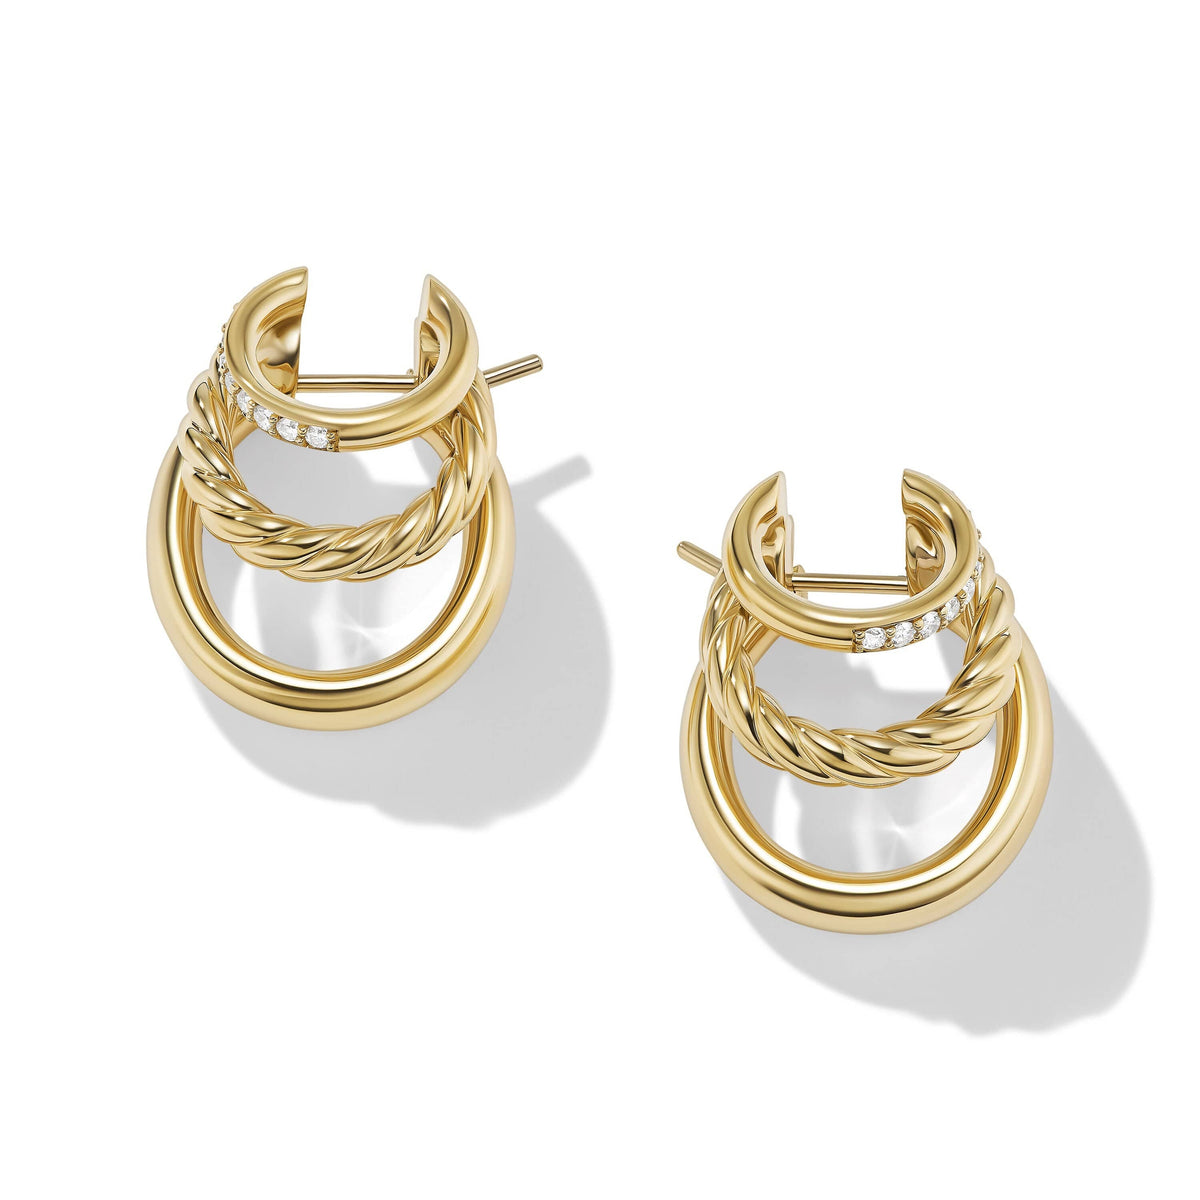 DY Mercer™ Multi Hoop Earrings in 18K Yellow Gold with Pavé Diamonds